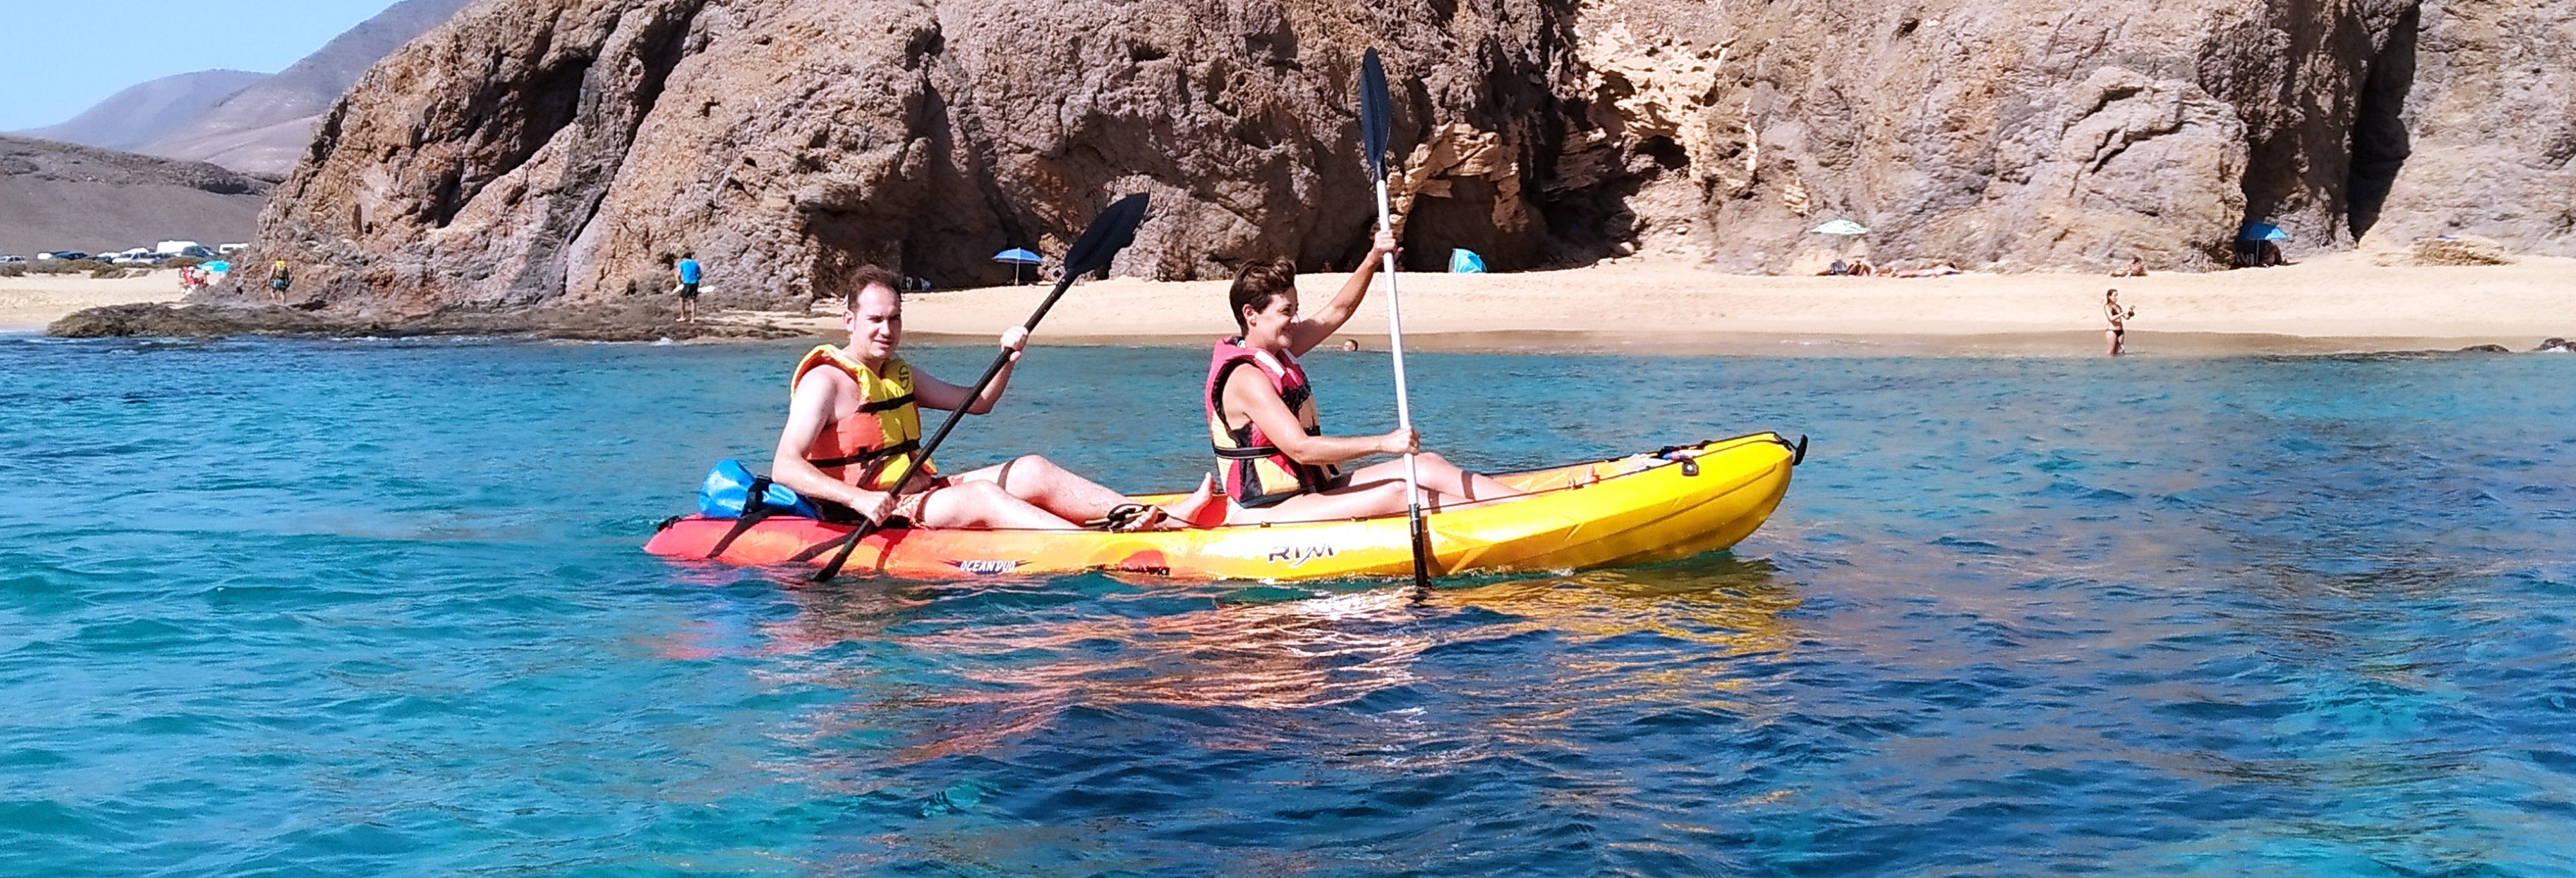 Excursión de Kayak y snorkel en la playa de Papagayo desde Playa Blanca desde Lanzarote